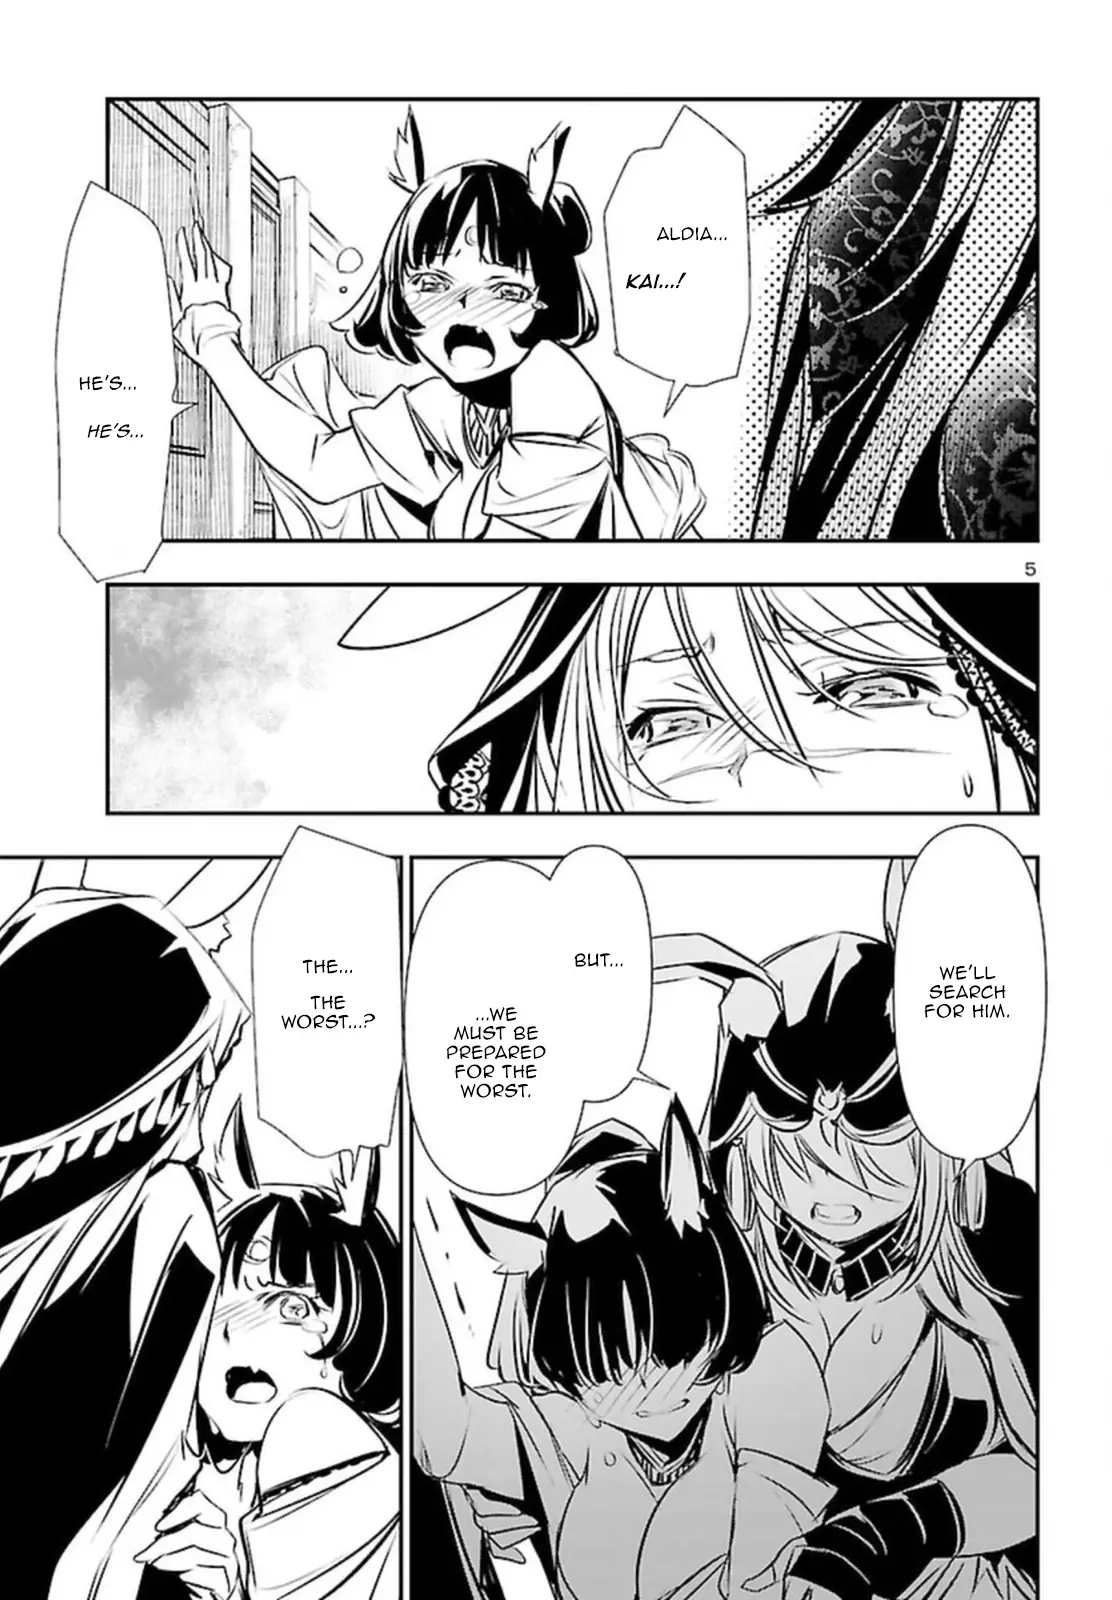 Shinju no Nectar - 71 page 5-41fef174